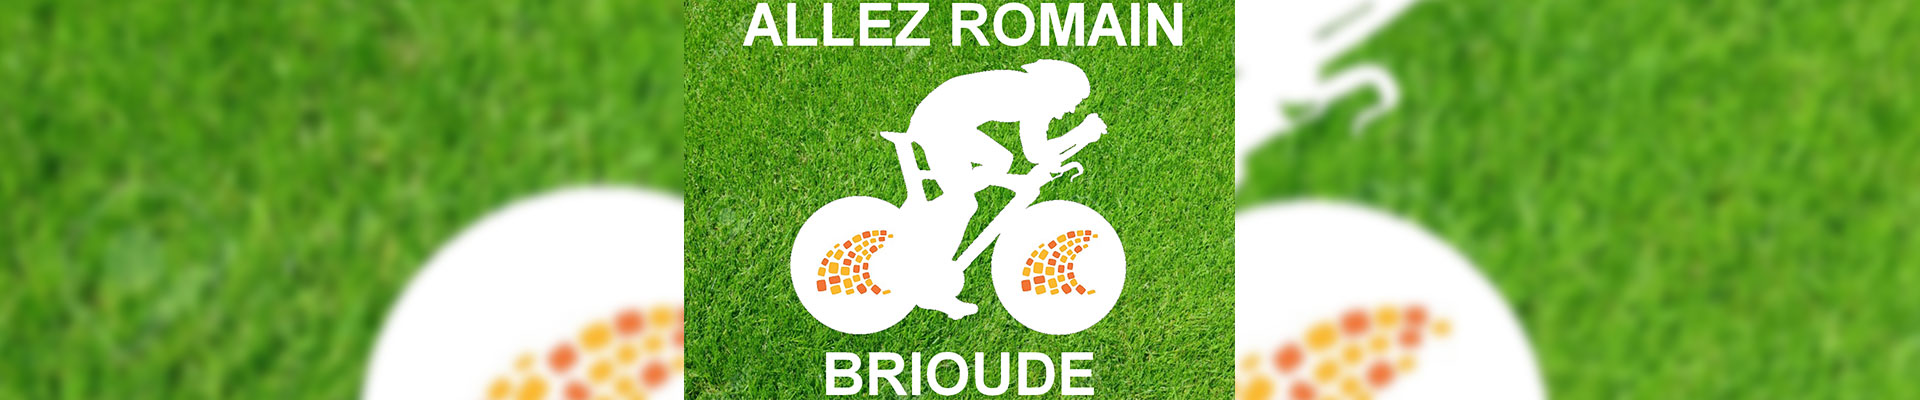 Monumental logo Tour de France, communication, community, company